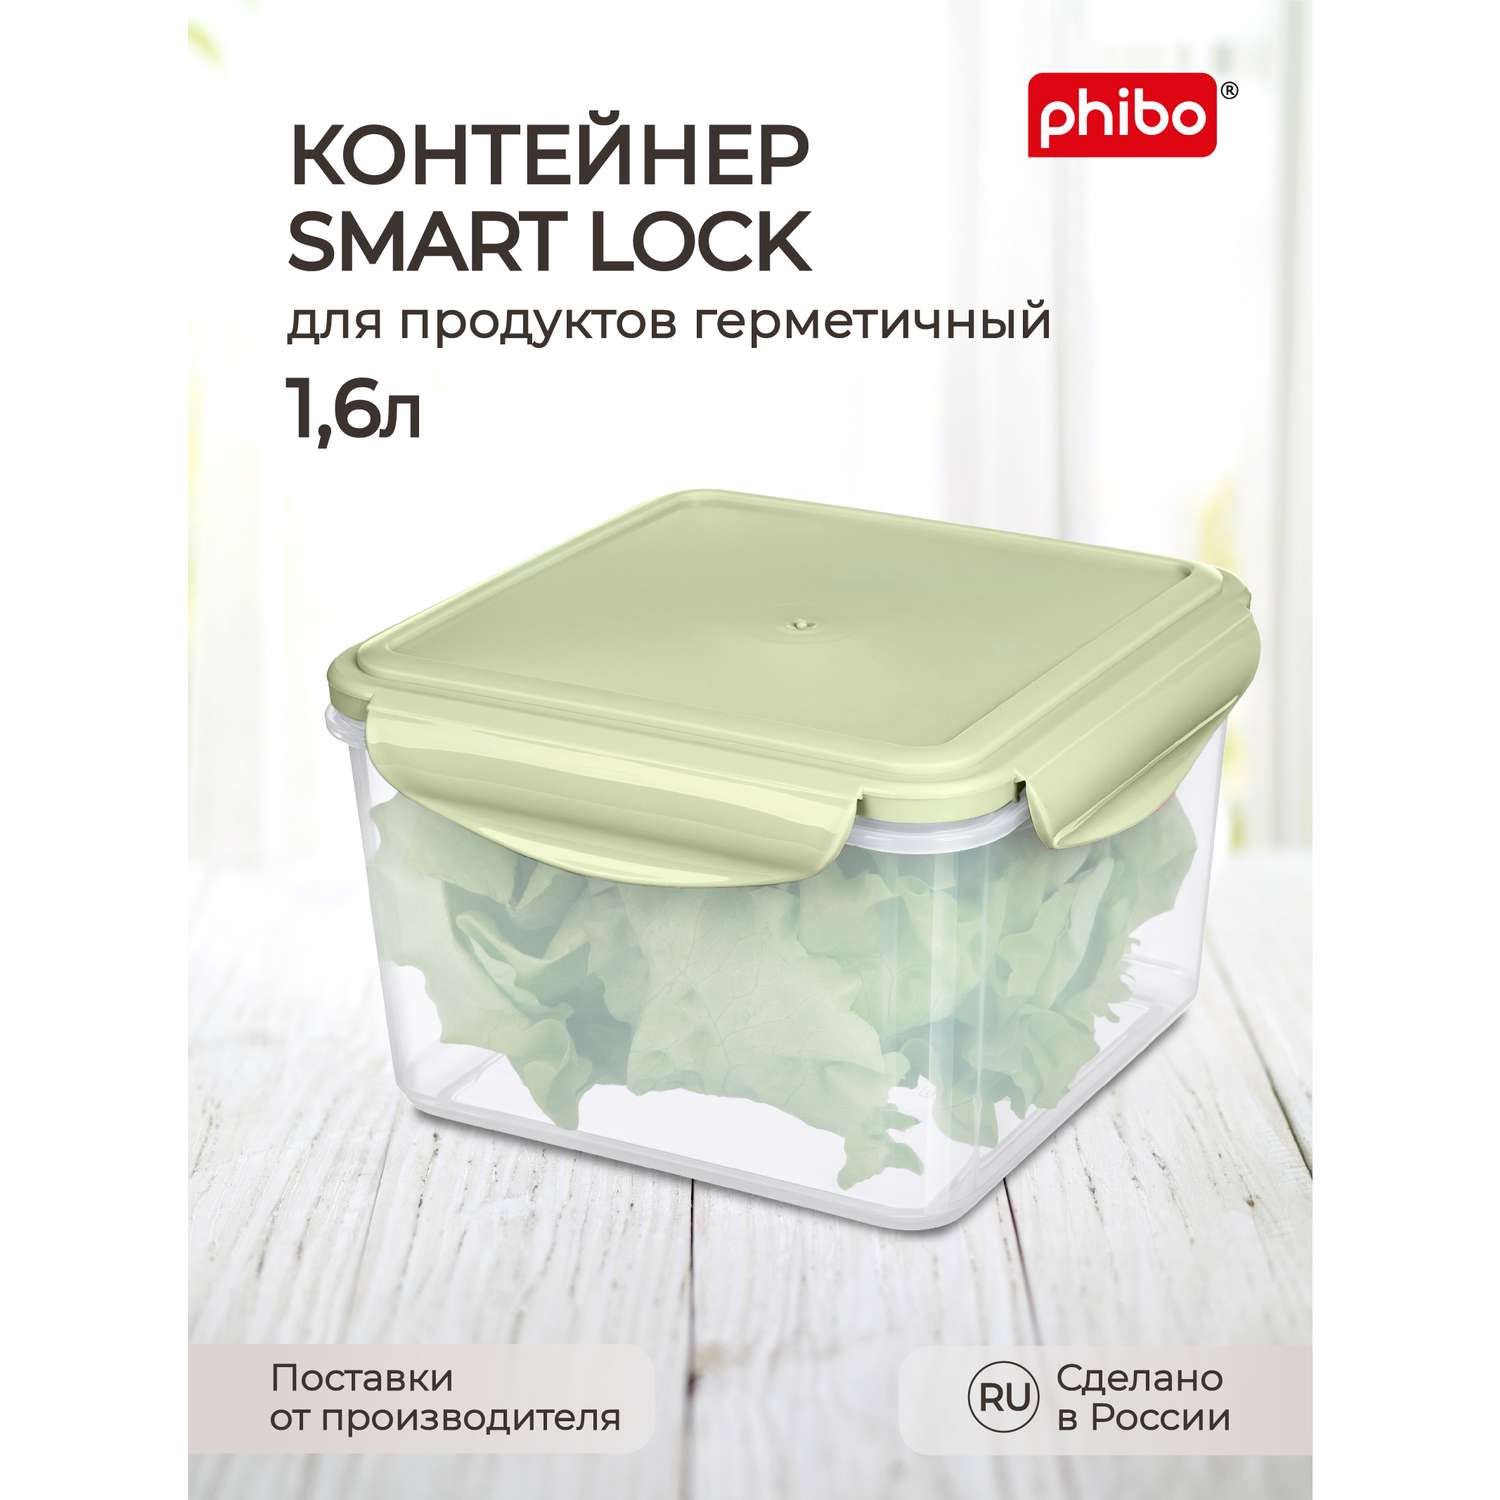 Контейнер Phibo для продуктов герметичный Smart Lock квадратный 1.6л зеленый - фото 1